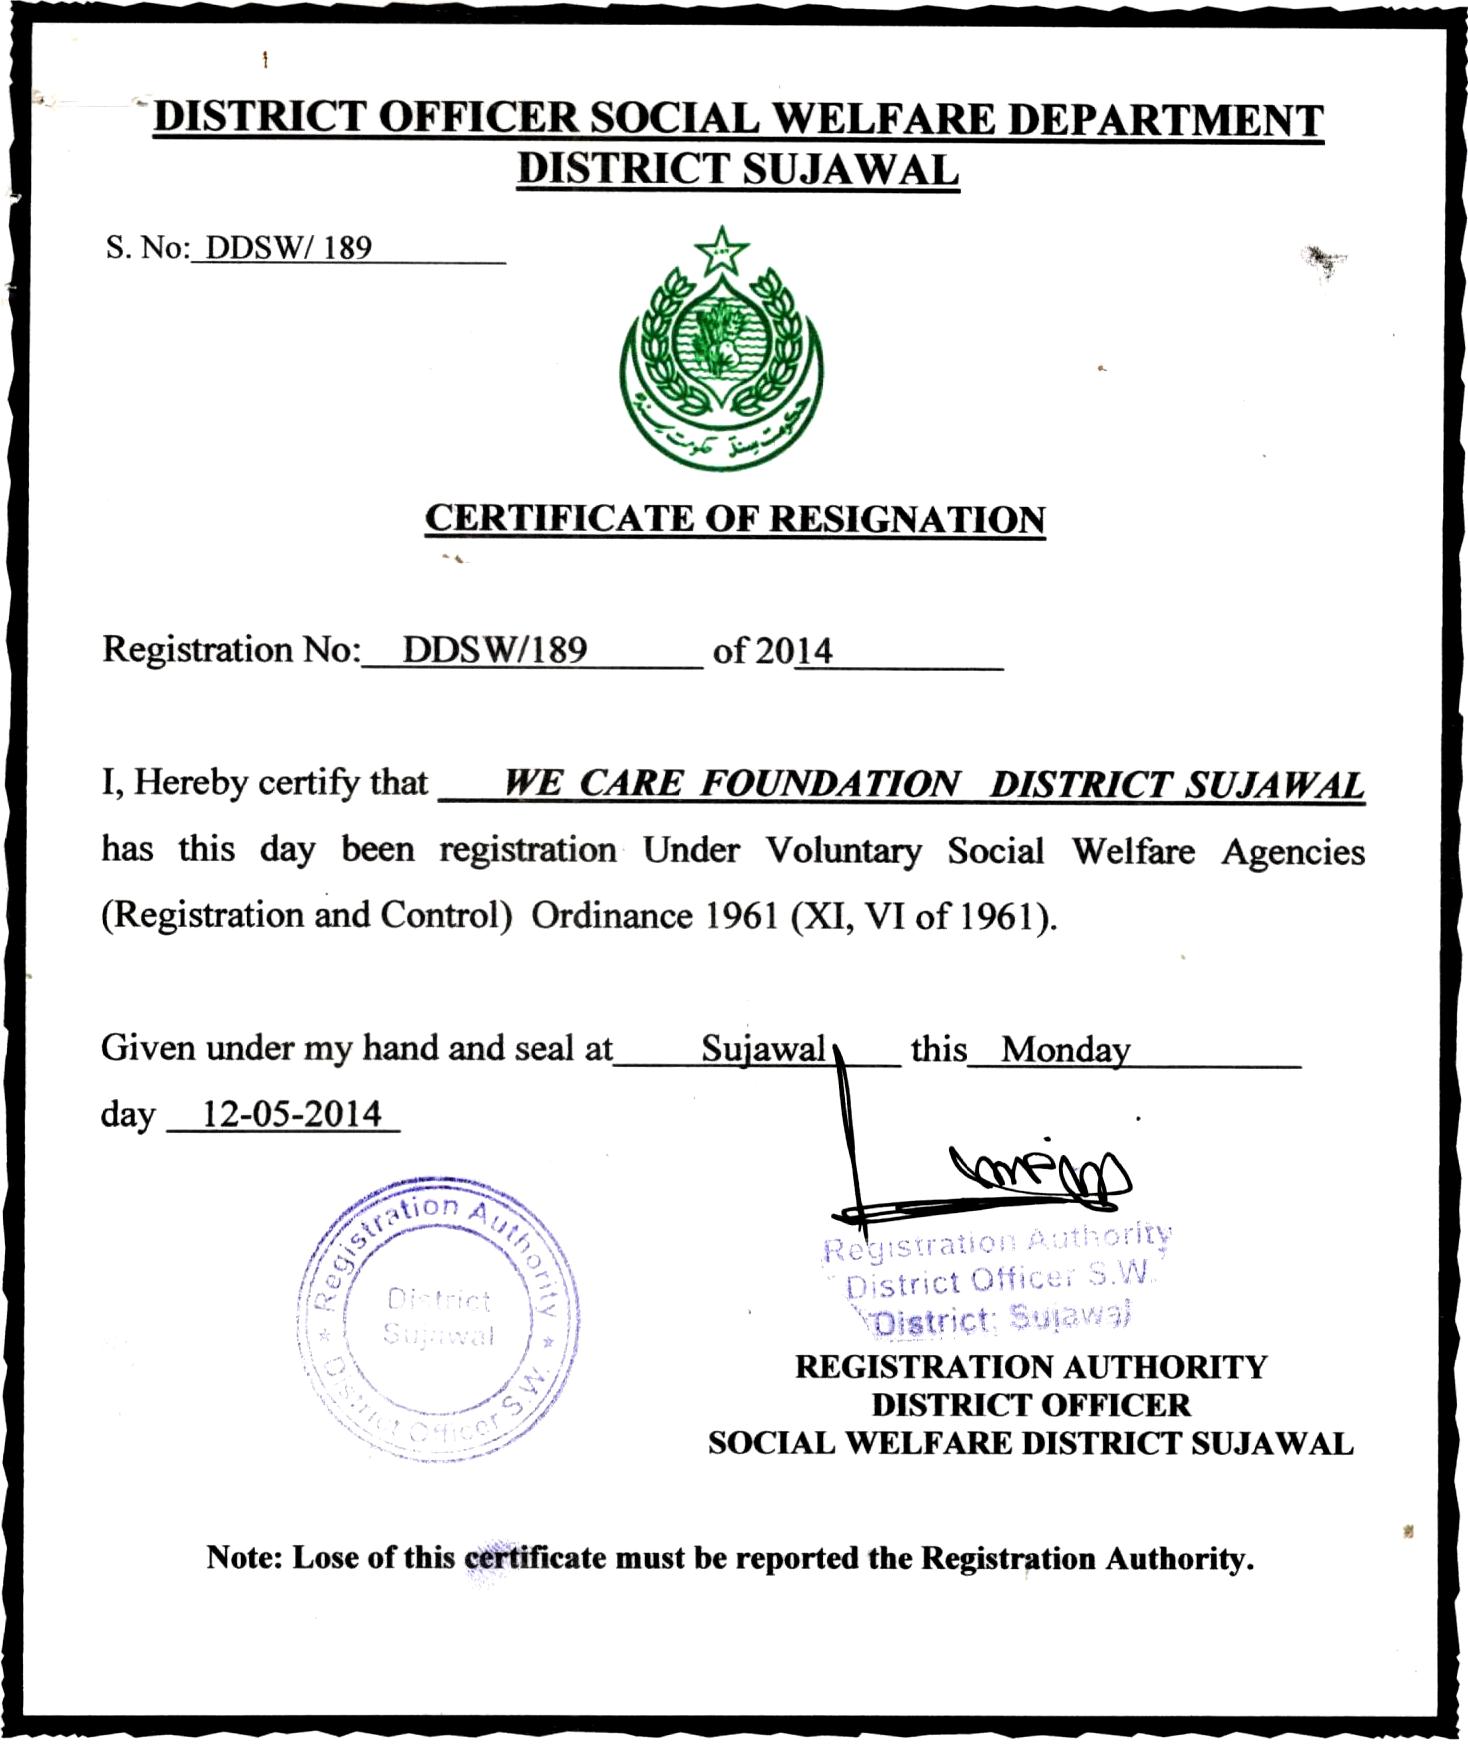 Registration at Social Welfare